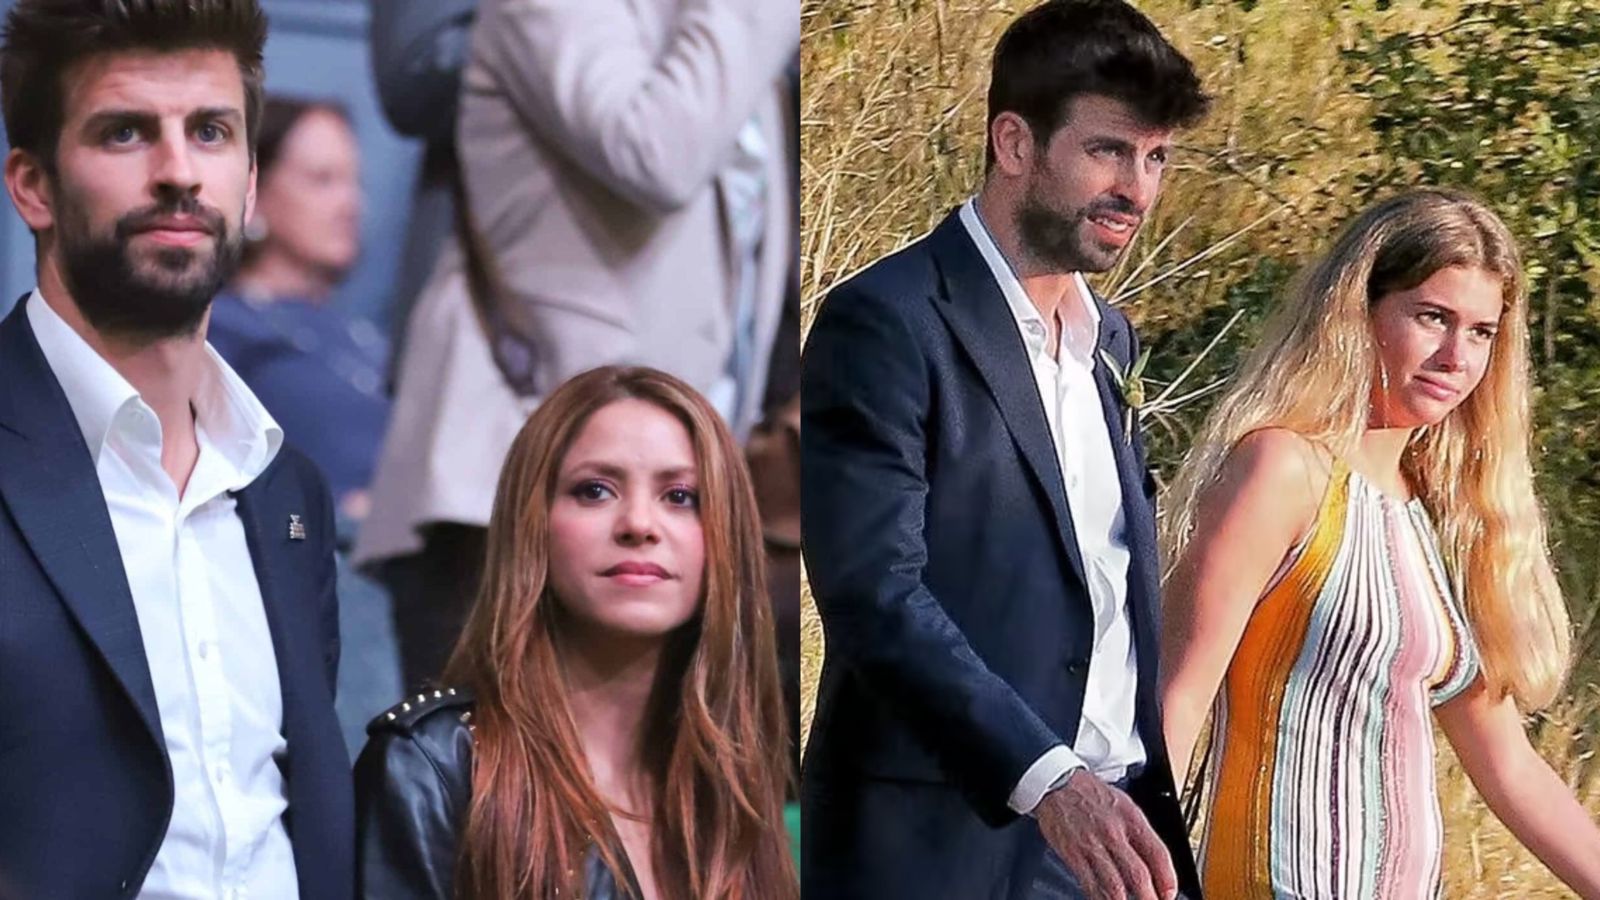 La nuevas fotografías de Gerard Piqué y Clara Chía tras su separación de Shakira
(Fotos: Revista ¡Hola! / Instagram/@holacom)